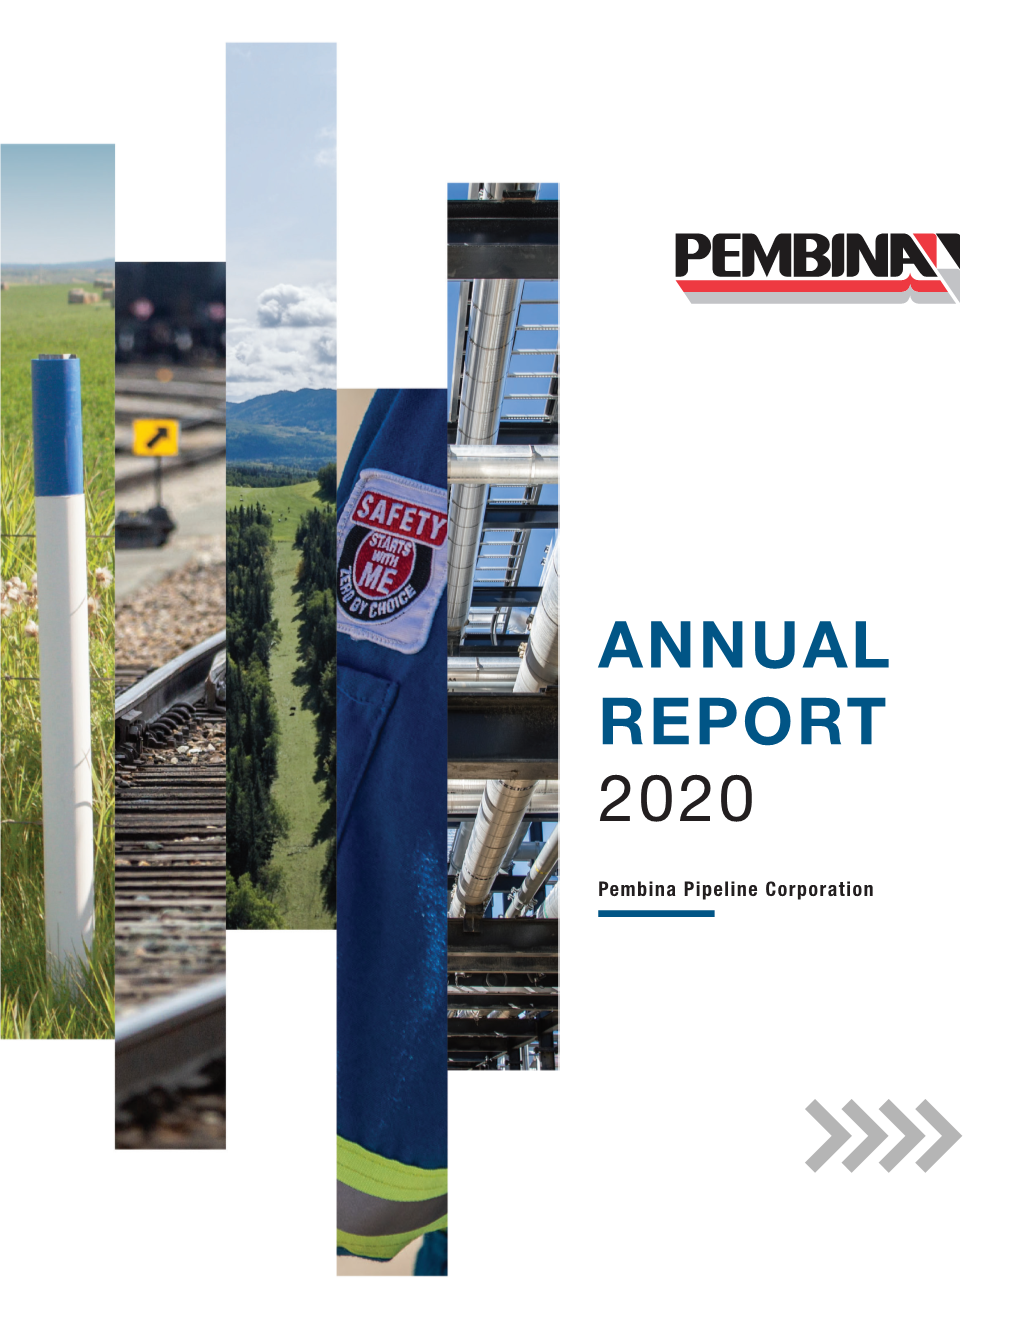 Q4 2020 Annual Report